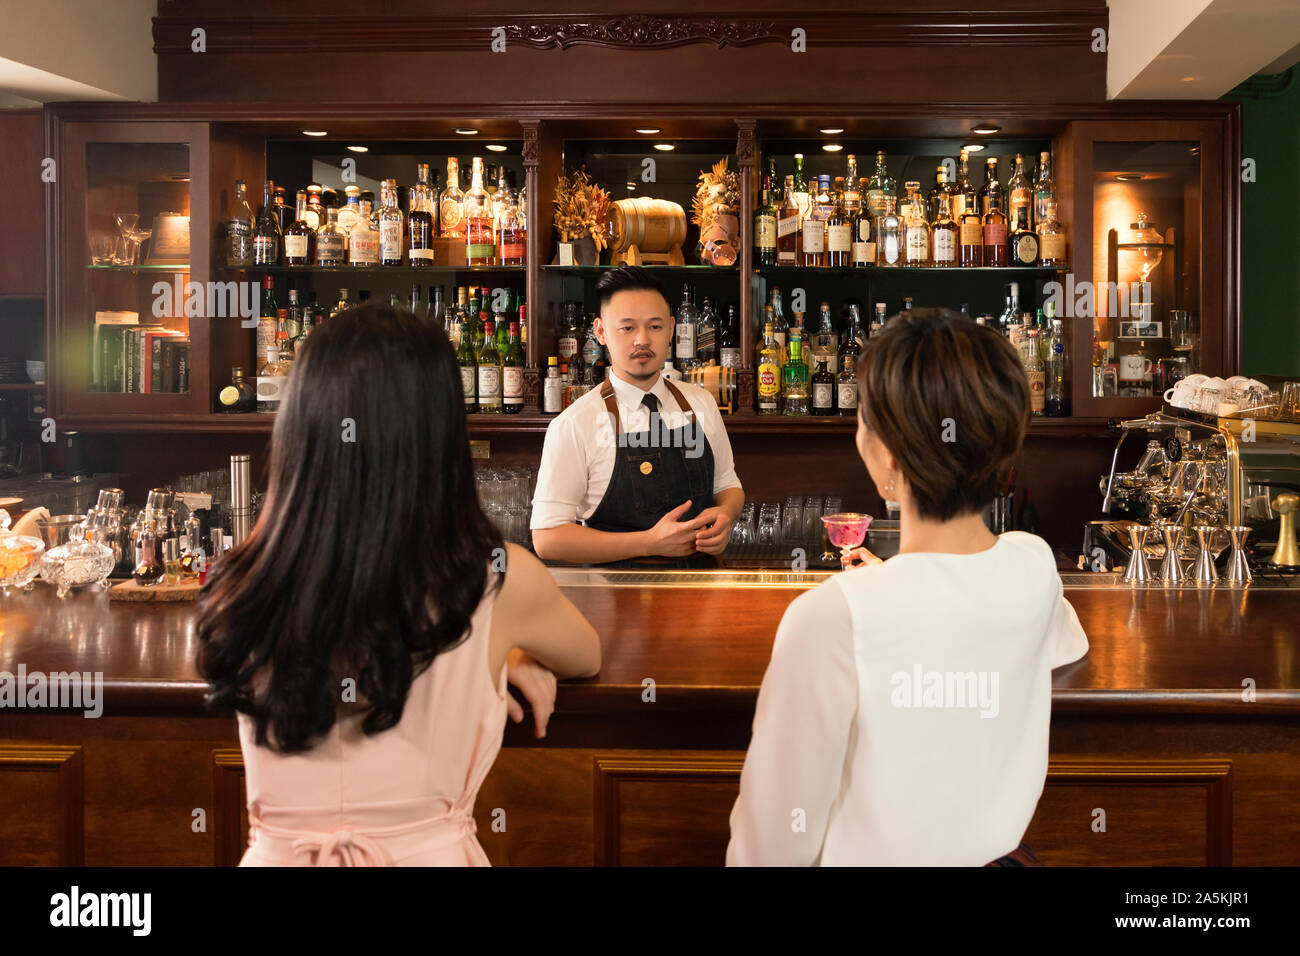 Zwei junge Frauen und Barkeeper an Theke Stockfoto